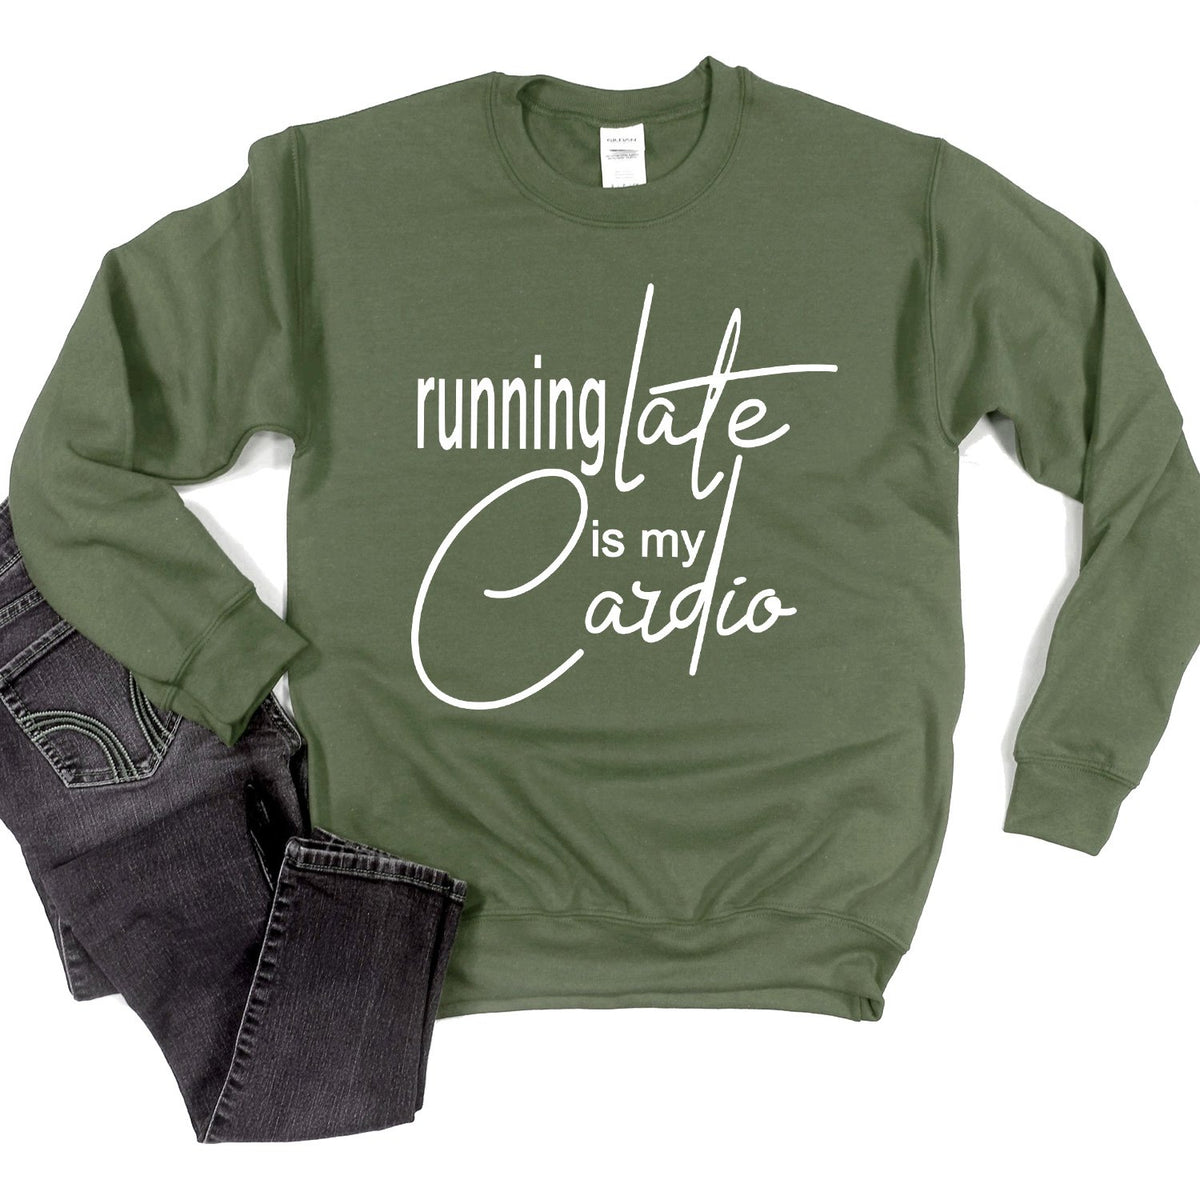 Running Late is My Cardio - Long Sleeve Heavy Crewneck Sweatshirt